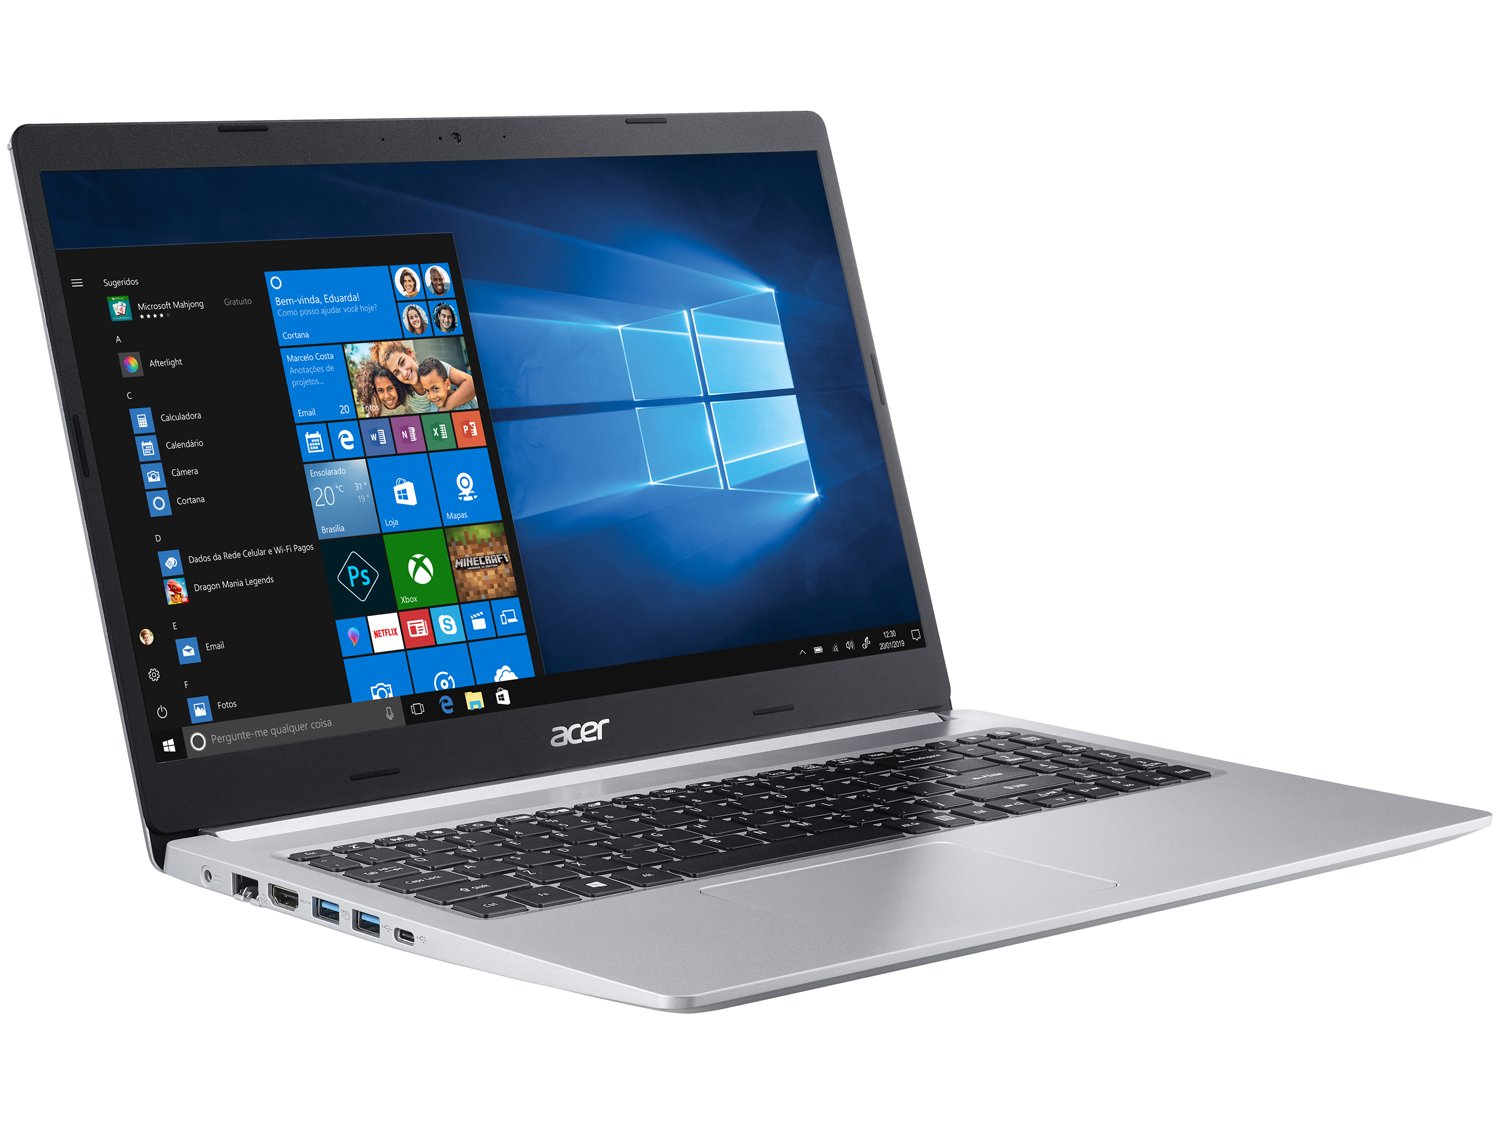 Notebook Acer Aspire 5 A515-54-587L Intel Core i5 - Quad-Core 8GB 256GB SSD 15,6" LED Windows 10 - Bivolt - 4